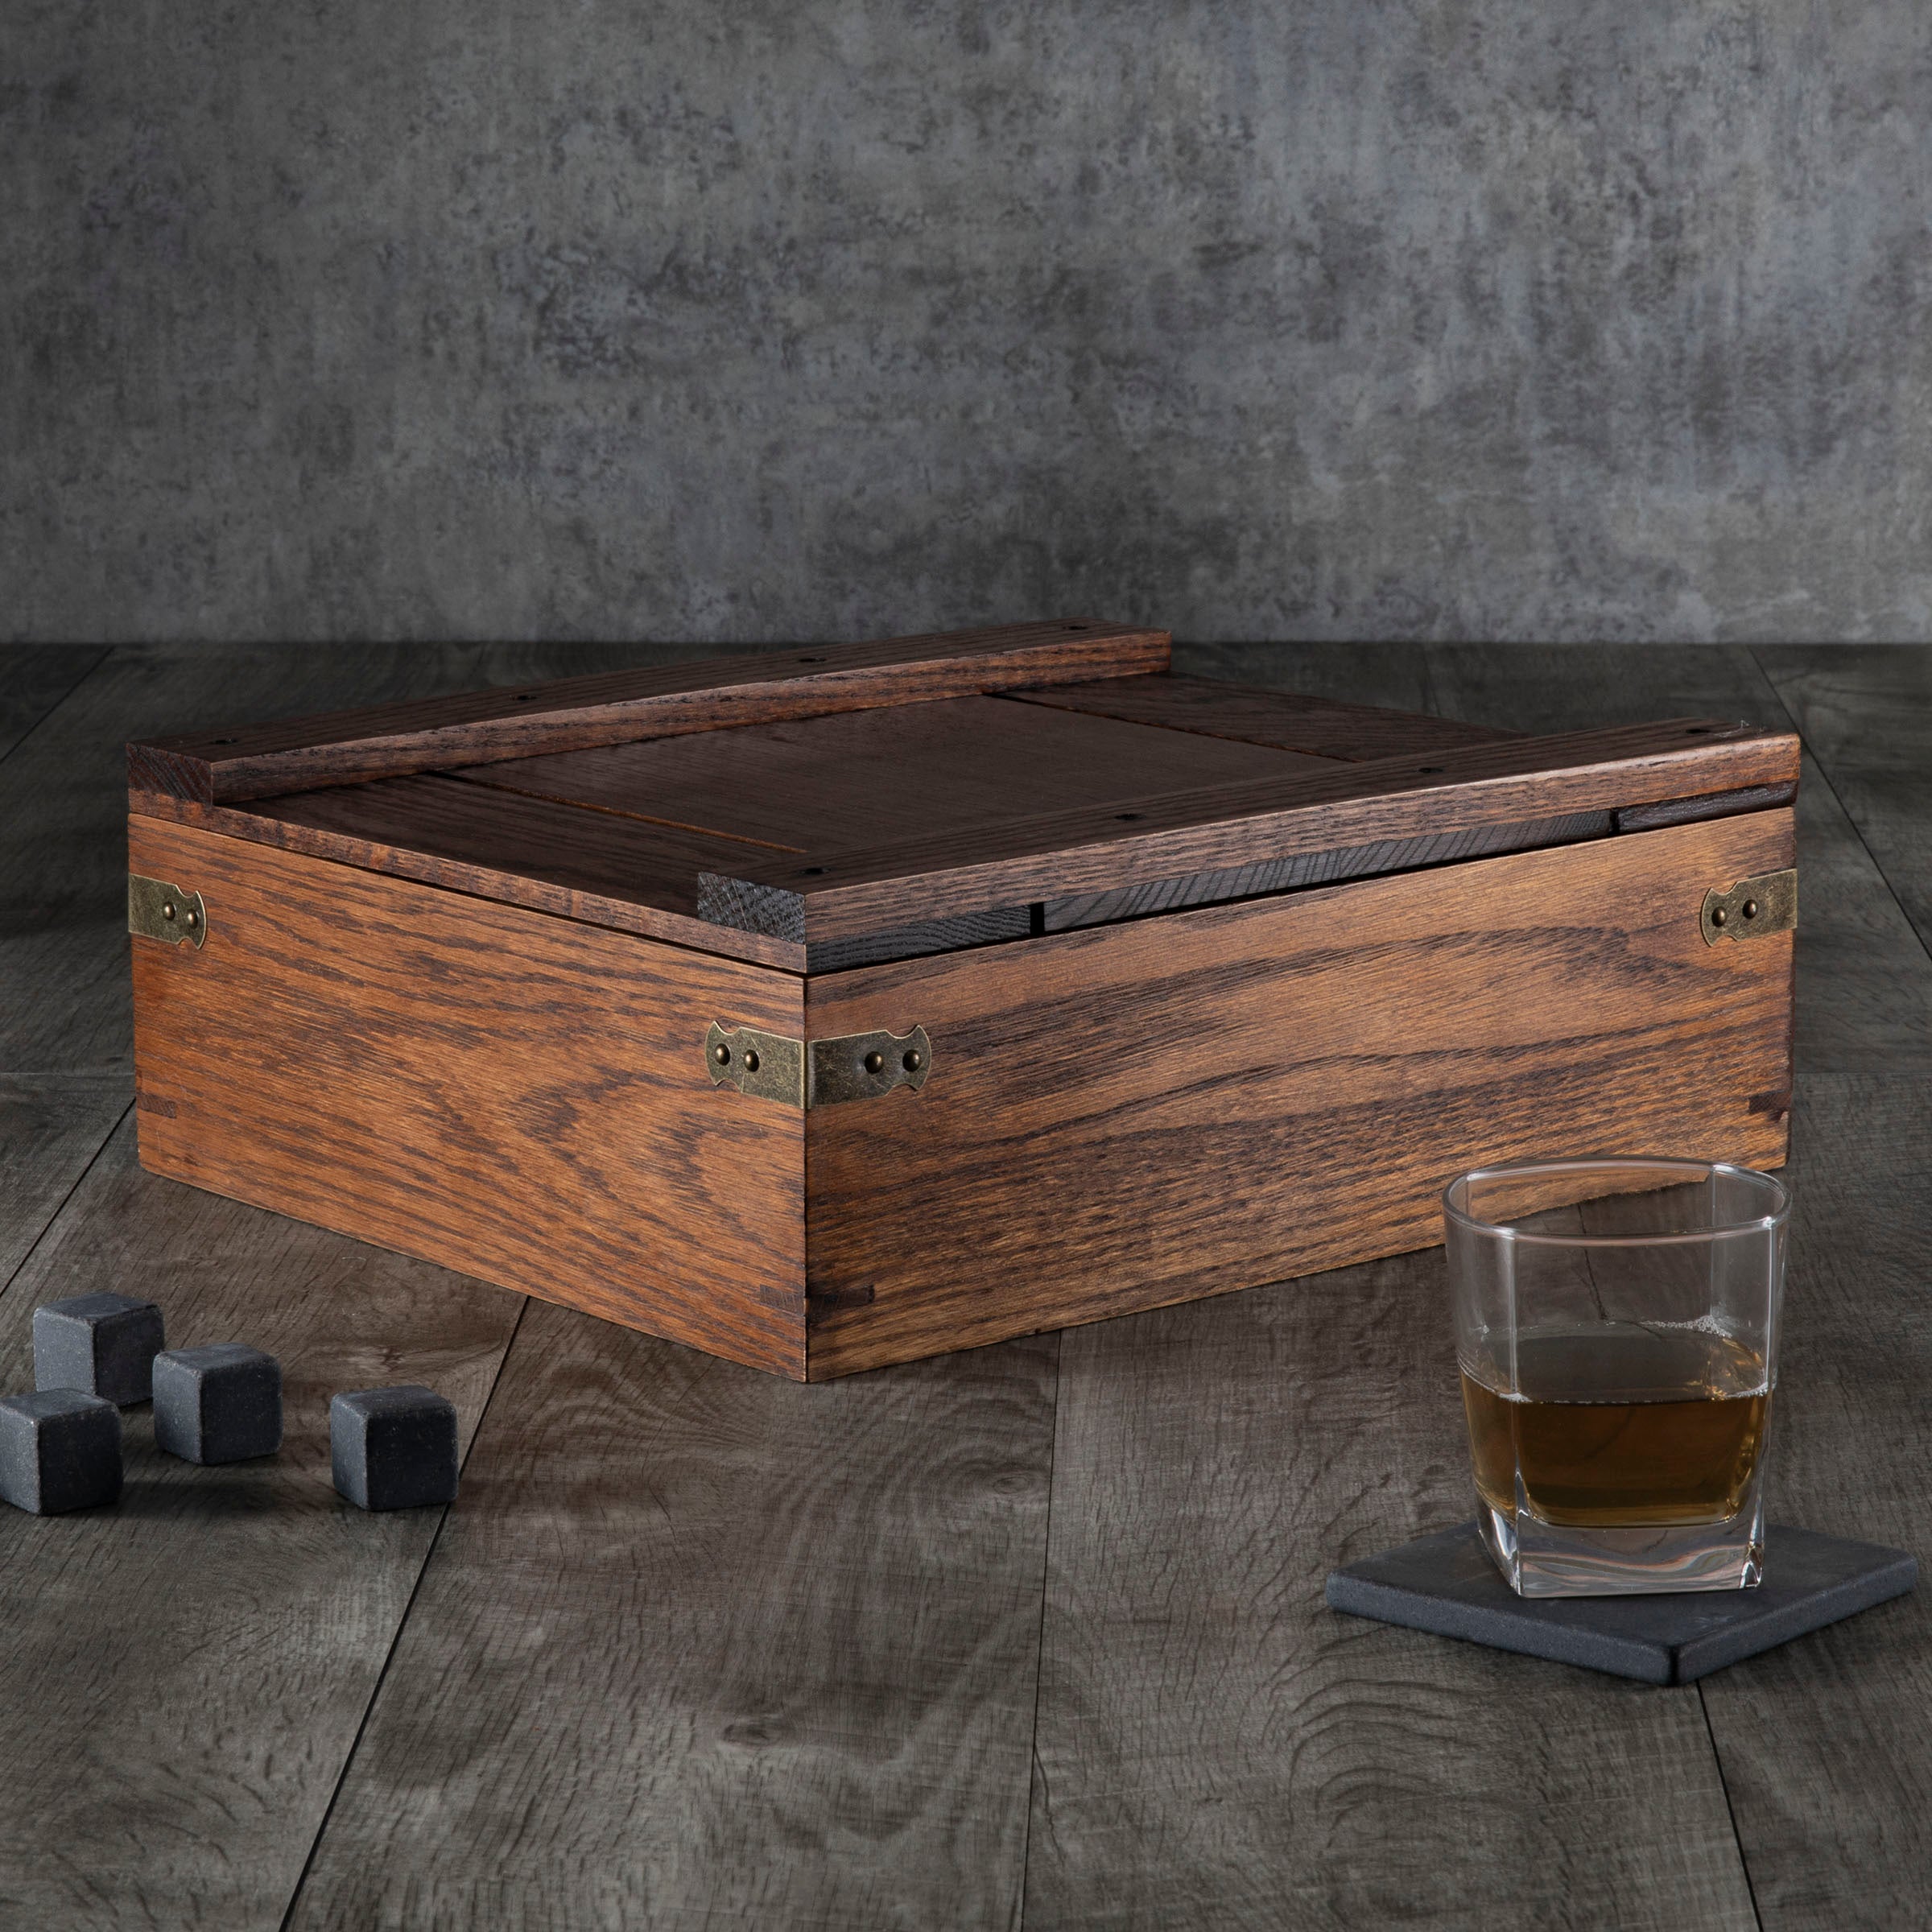 Cleveland Guardians - Whiskey Box Gift Set